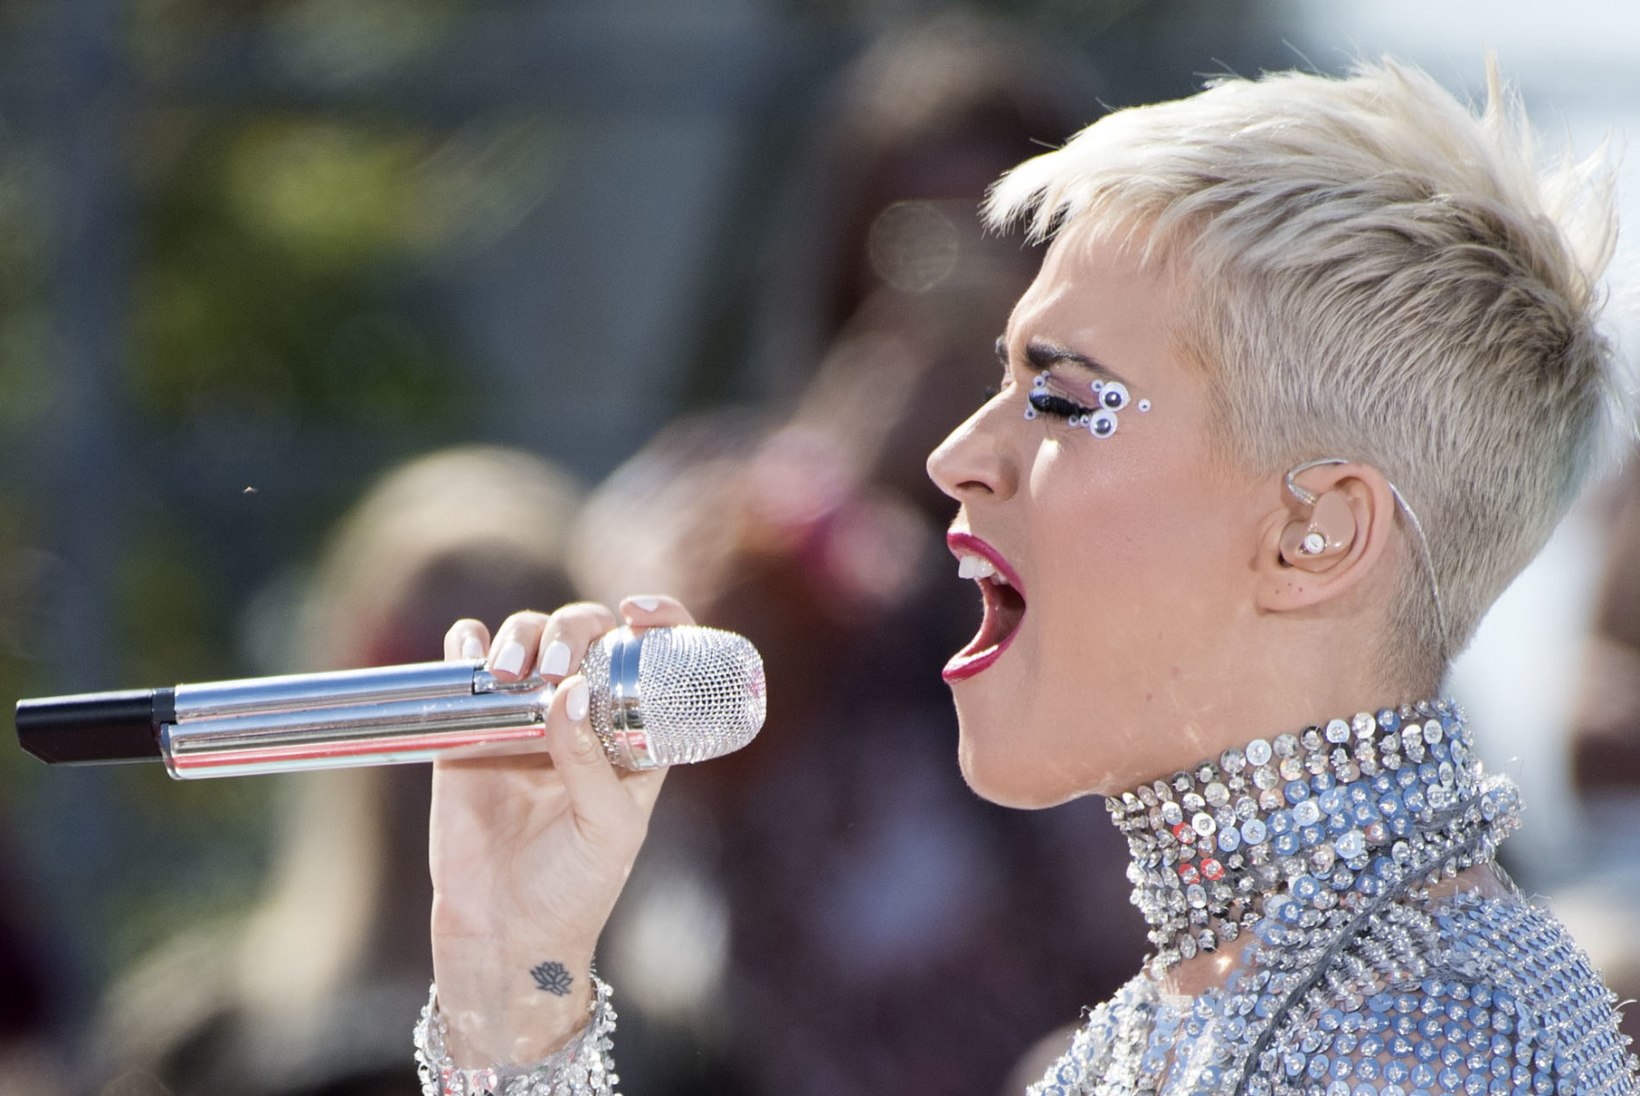 Lavatööline süüdistab varbast ilmajäämises  Katy Perryt 